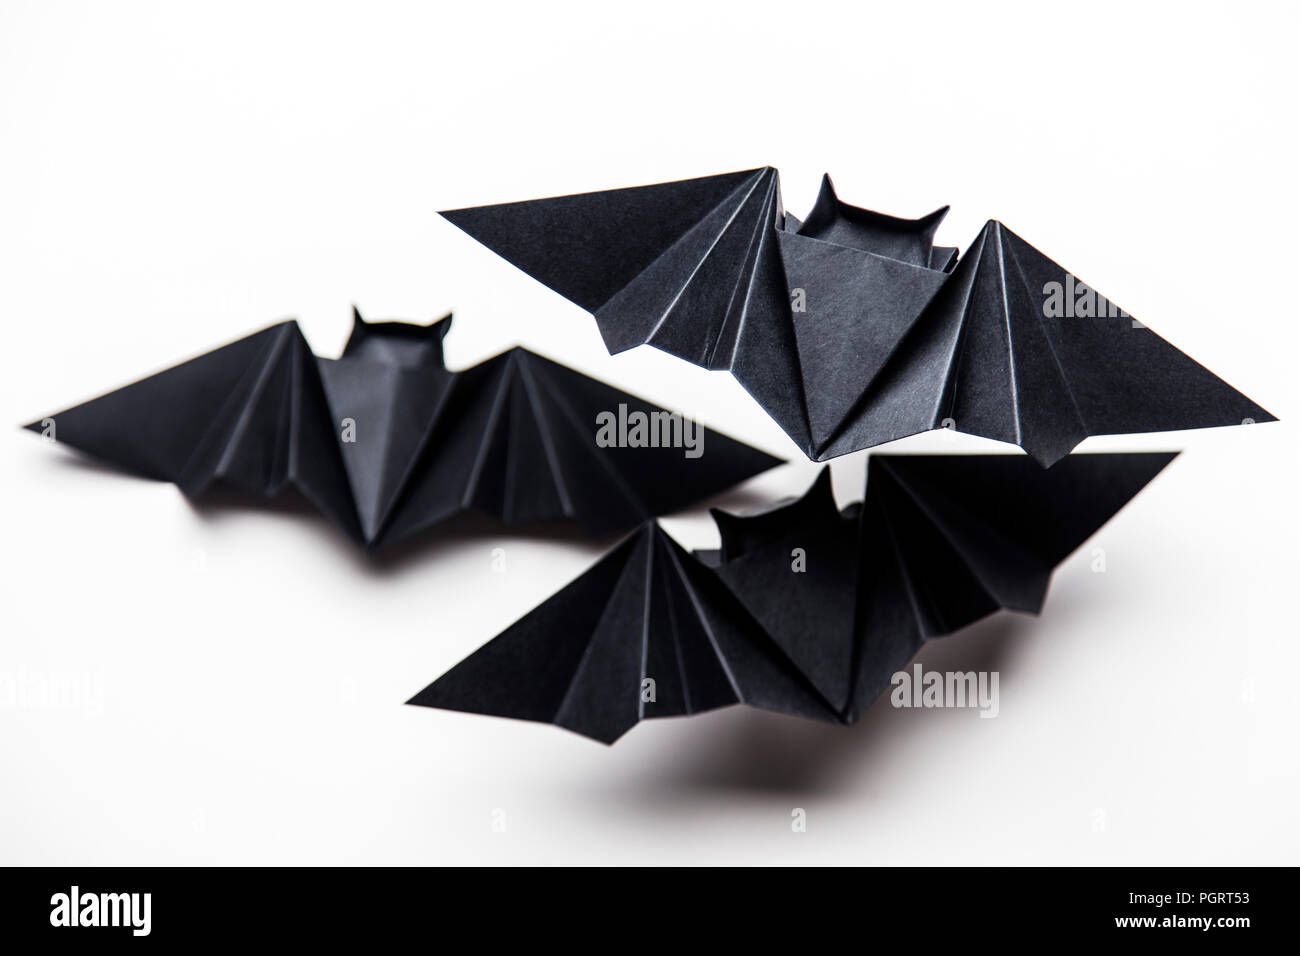 Pipistrelli origami immagini e fotografie stock ad alta risoluzione - Alamy